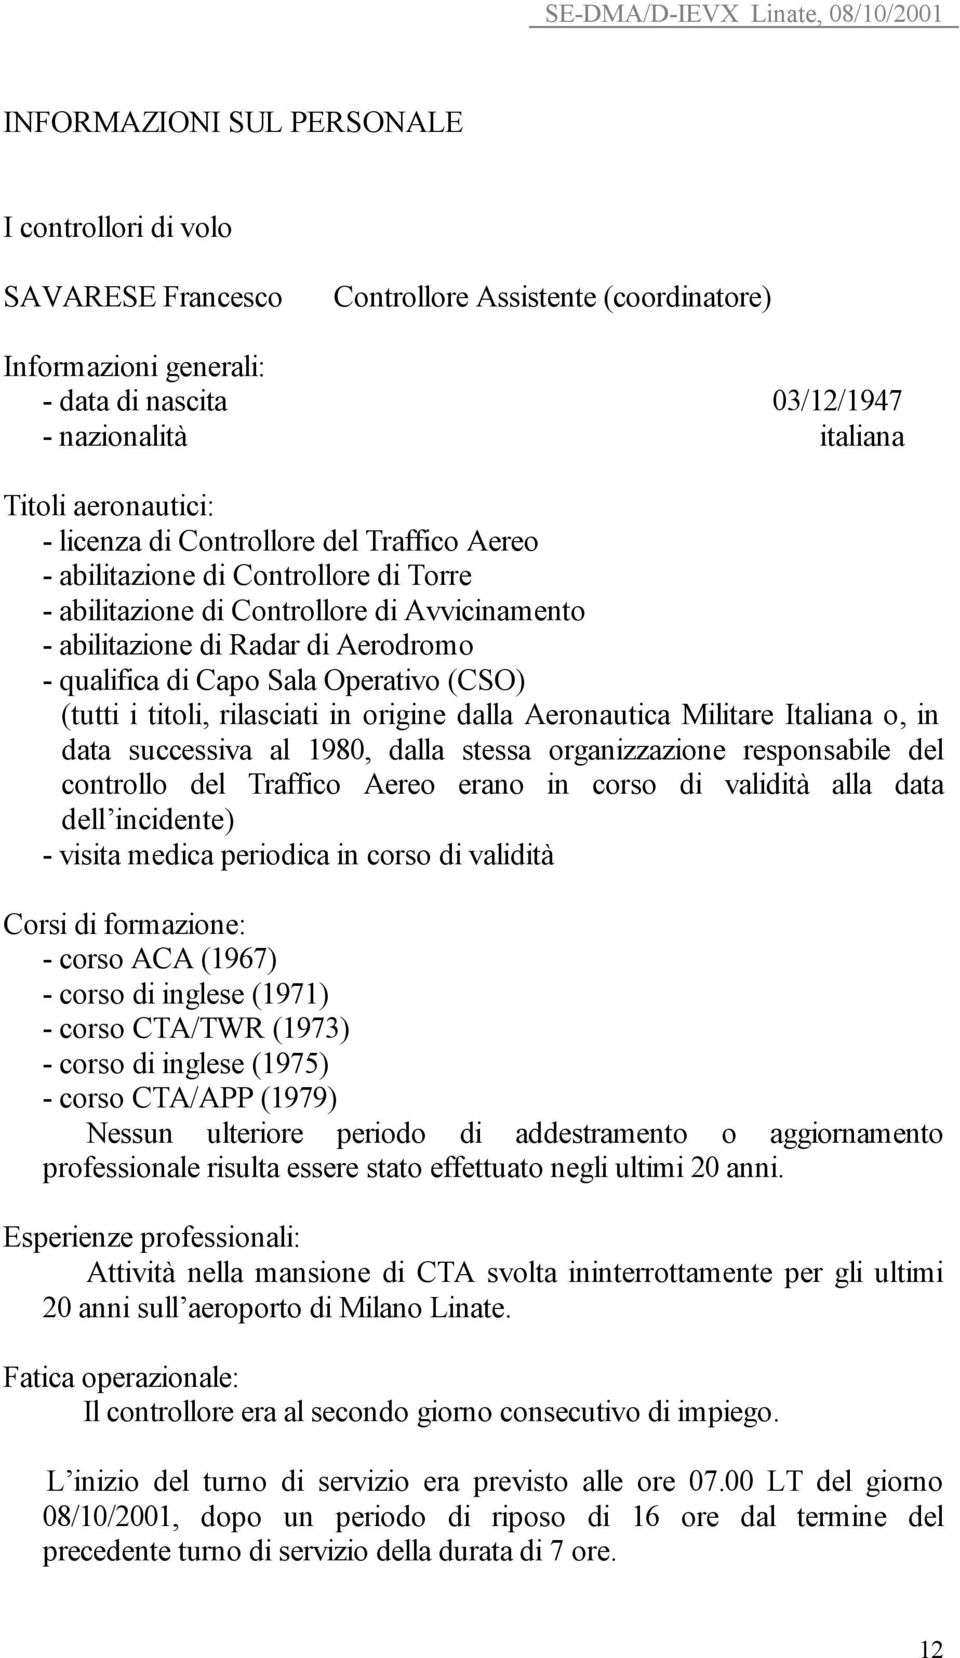 Sala Operativo (CSO) (tutti i titoli, rilasciati in origine dalla Aeronautica Militare Italiana o, in data successiva al 1980, dalla stessa organizzazione responsabile del controllo del Traffico